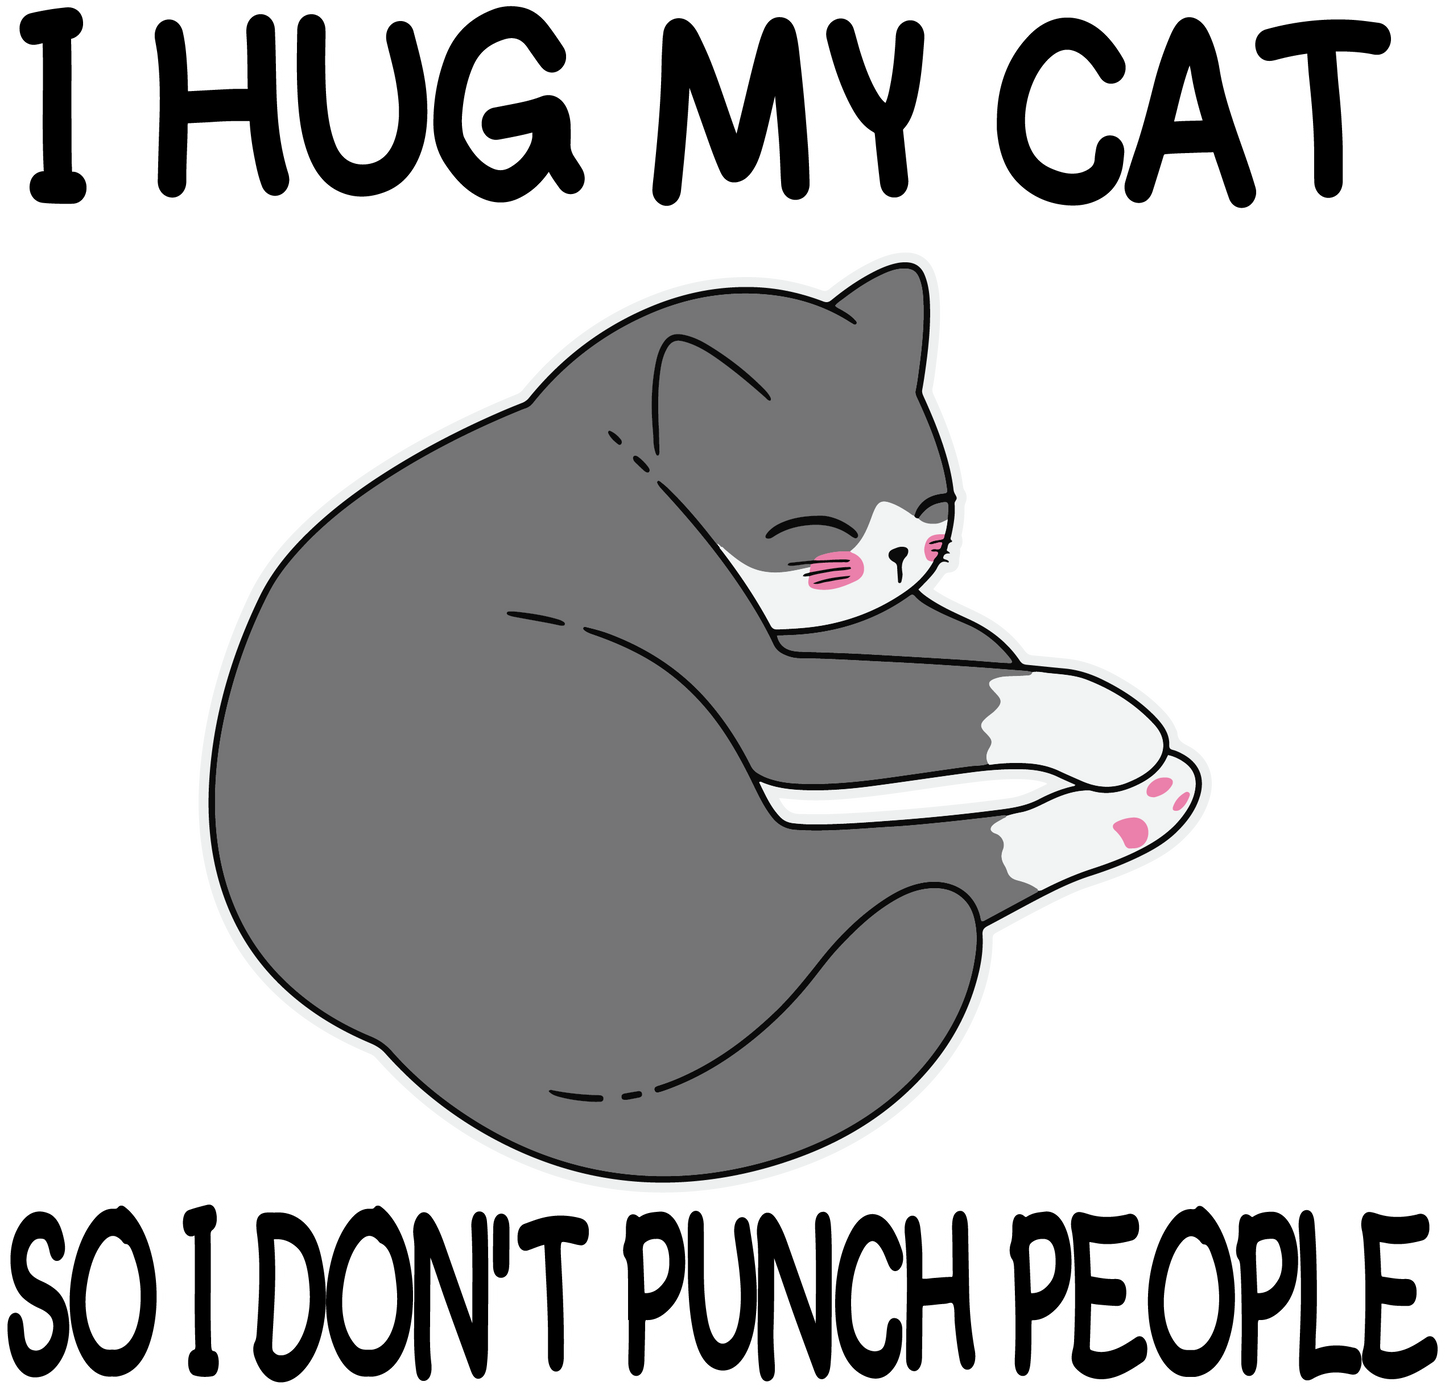 I HUG MY CAT